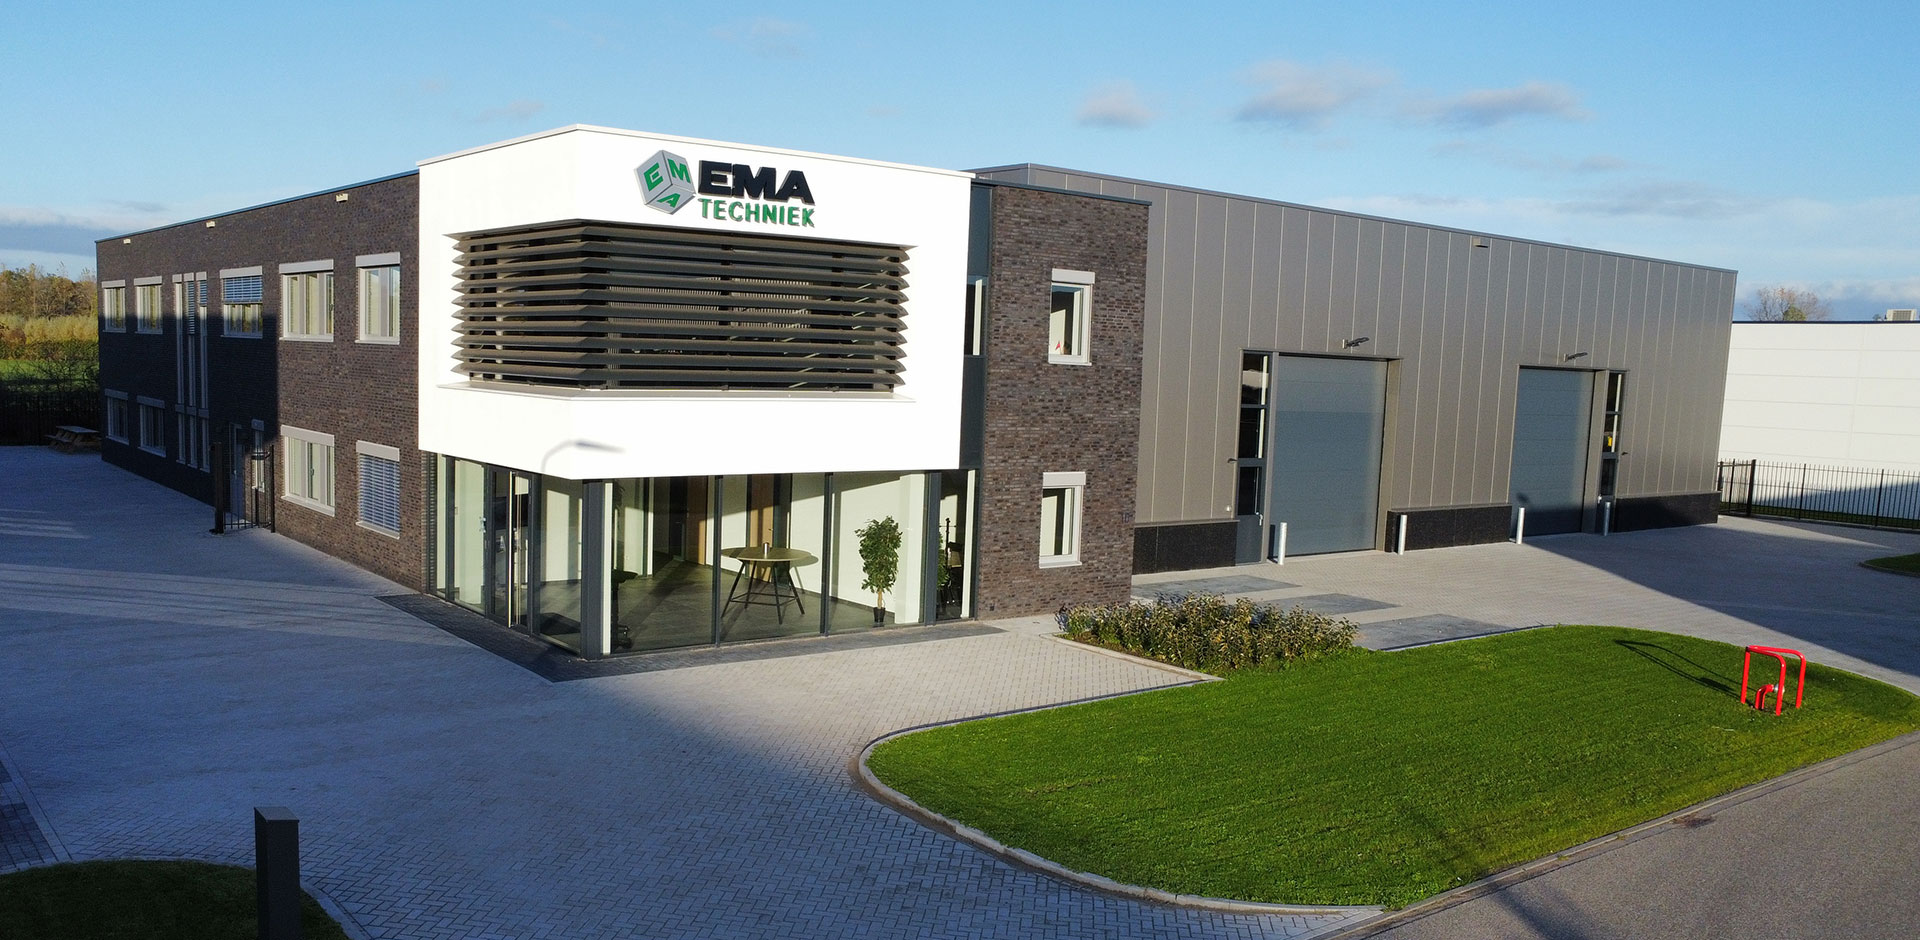 Bedrijfspand van EMA-Techniek in Varsseveld, Achterhoek, expert in engineering en speciaal machinebouw.